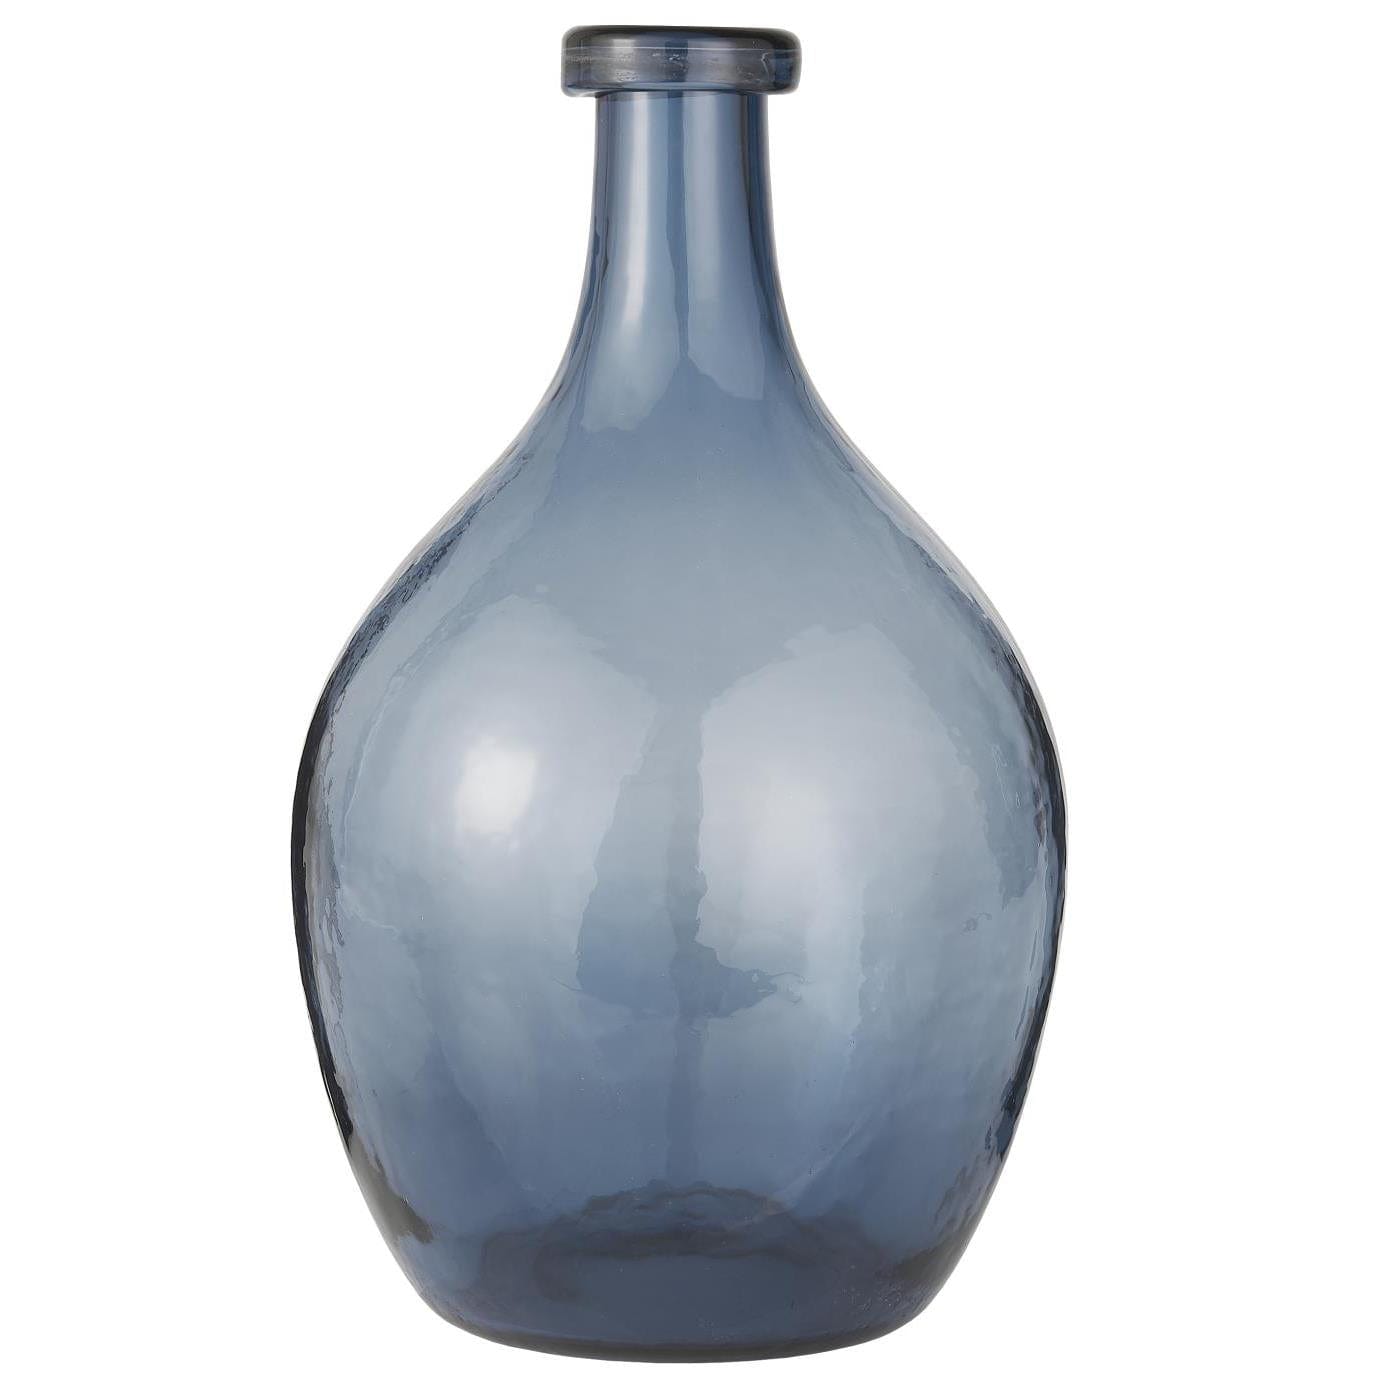 Lekker munnblåst glassballong i blått som kan stå alene og pryde hjemmet ditt eller dekorer med dine favoritt blomster. Kvister er også dekorative i denne klassiske vasen fra Ib Laursen.